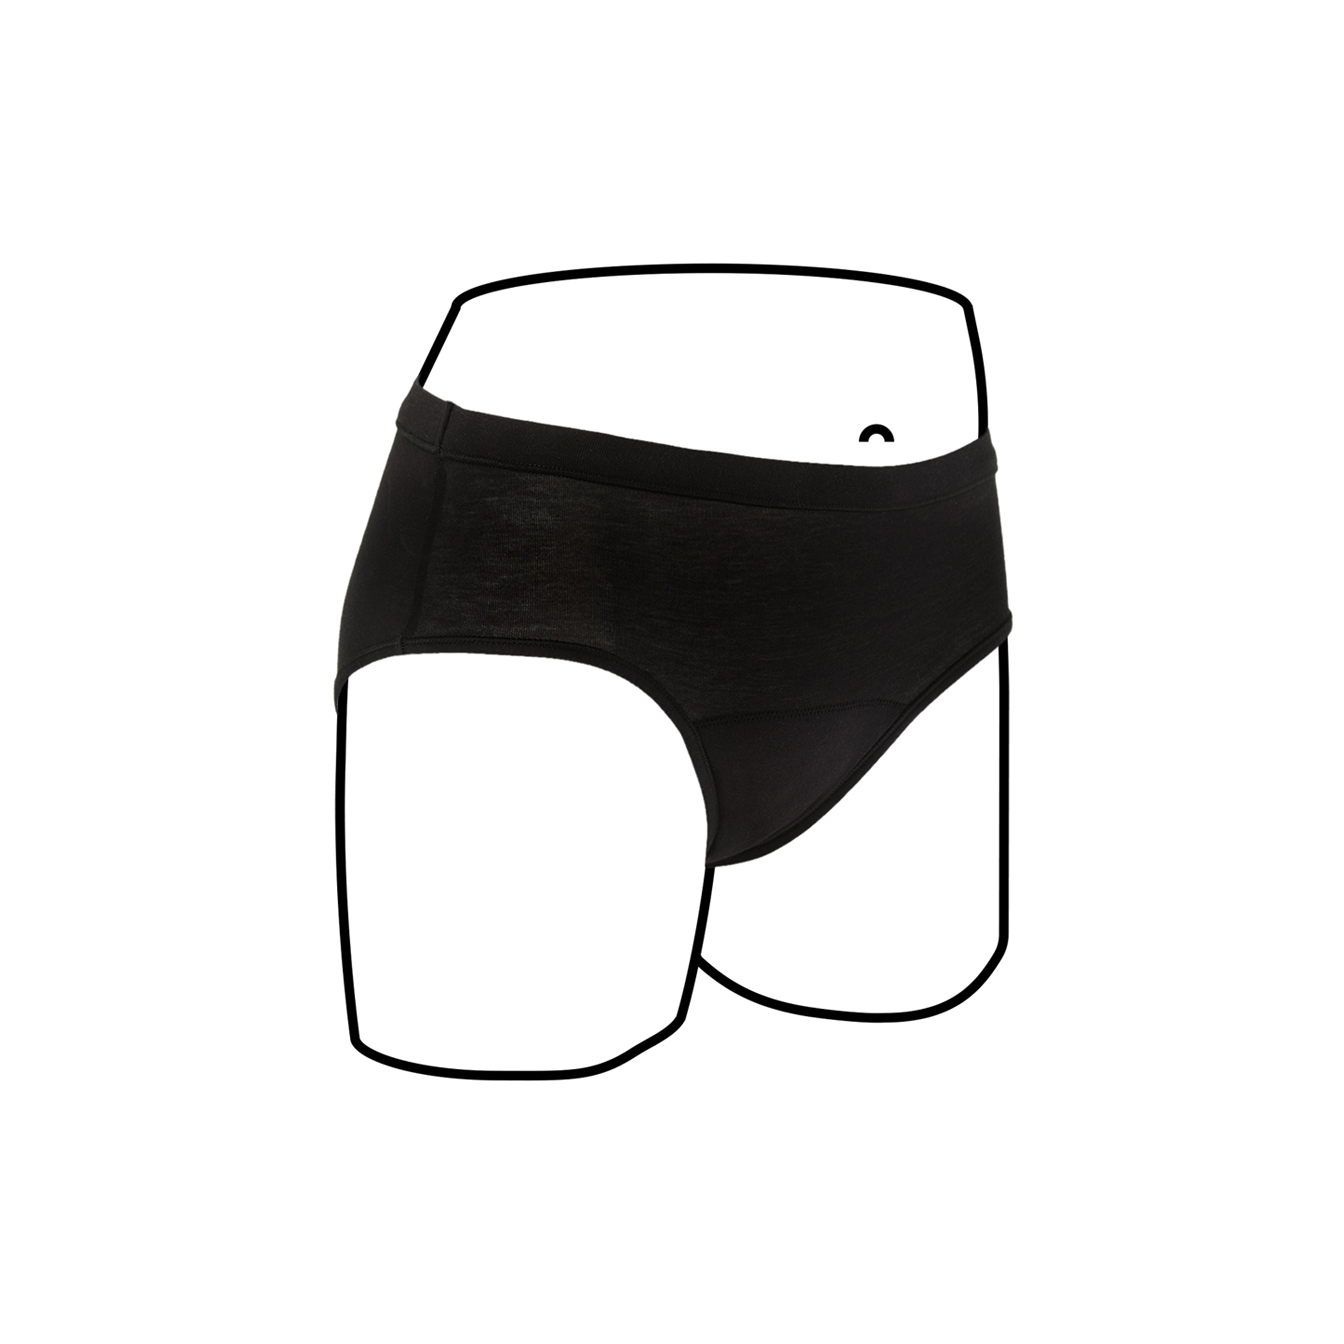 U by Kotex Thinx Period Underwear Black Briefs Size 12 - Direct